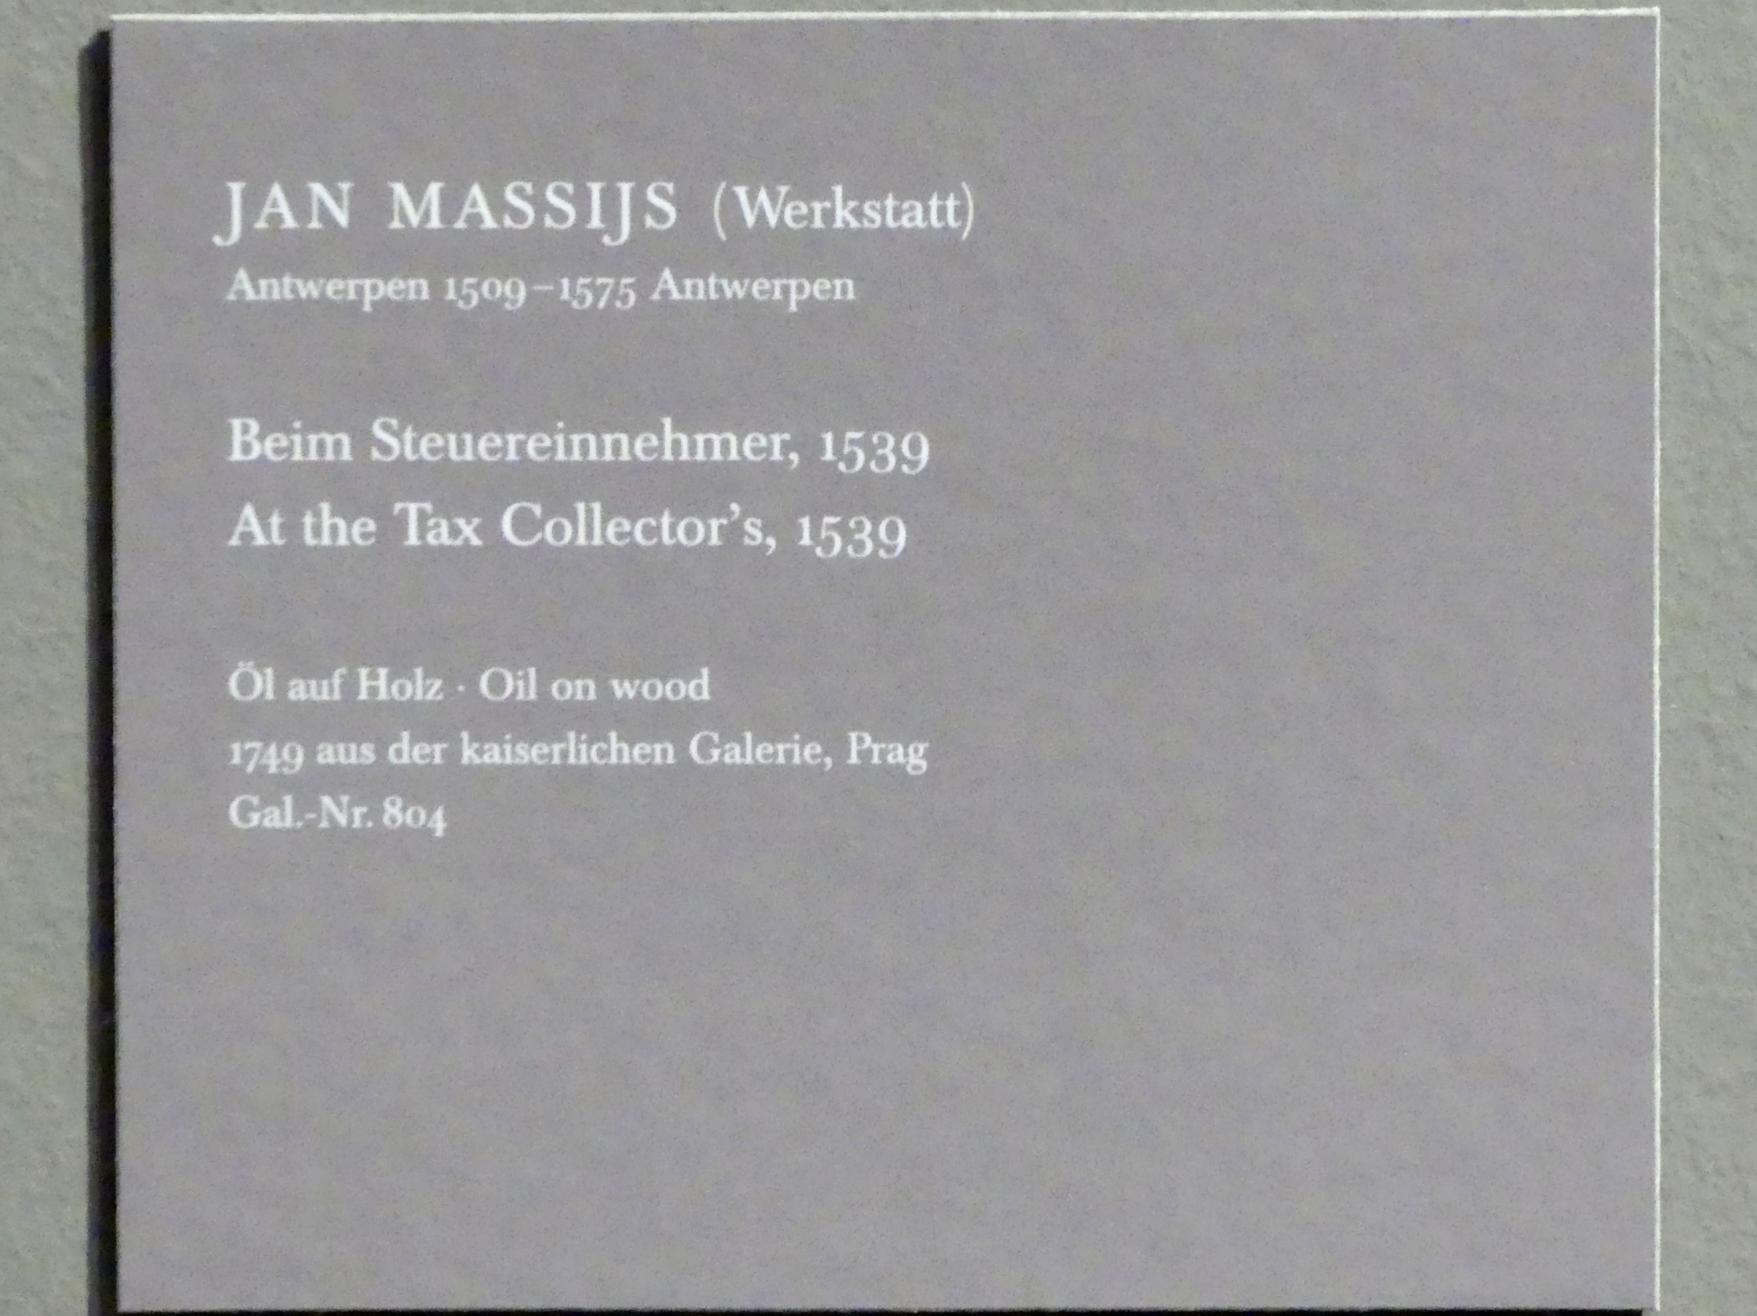 Jan Massys (Werkstatt) (1539), Beim Steuereinnehmer, Dresden, Gemäldegalerie Alte Meister, EG: Altäre und Andachtsbilder, 1539, Bild 2/2